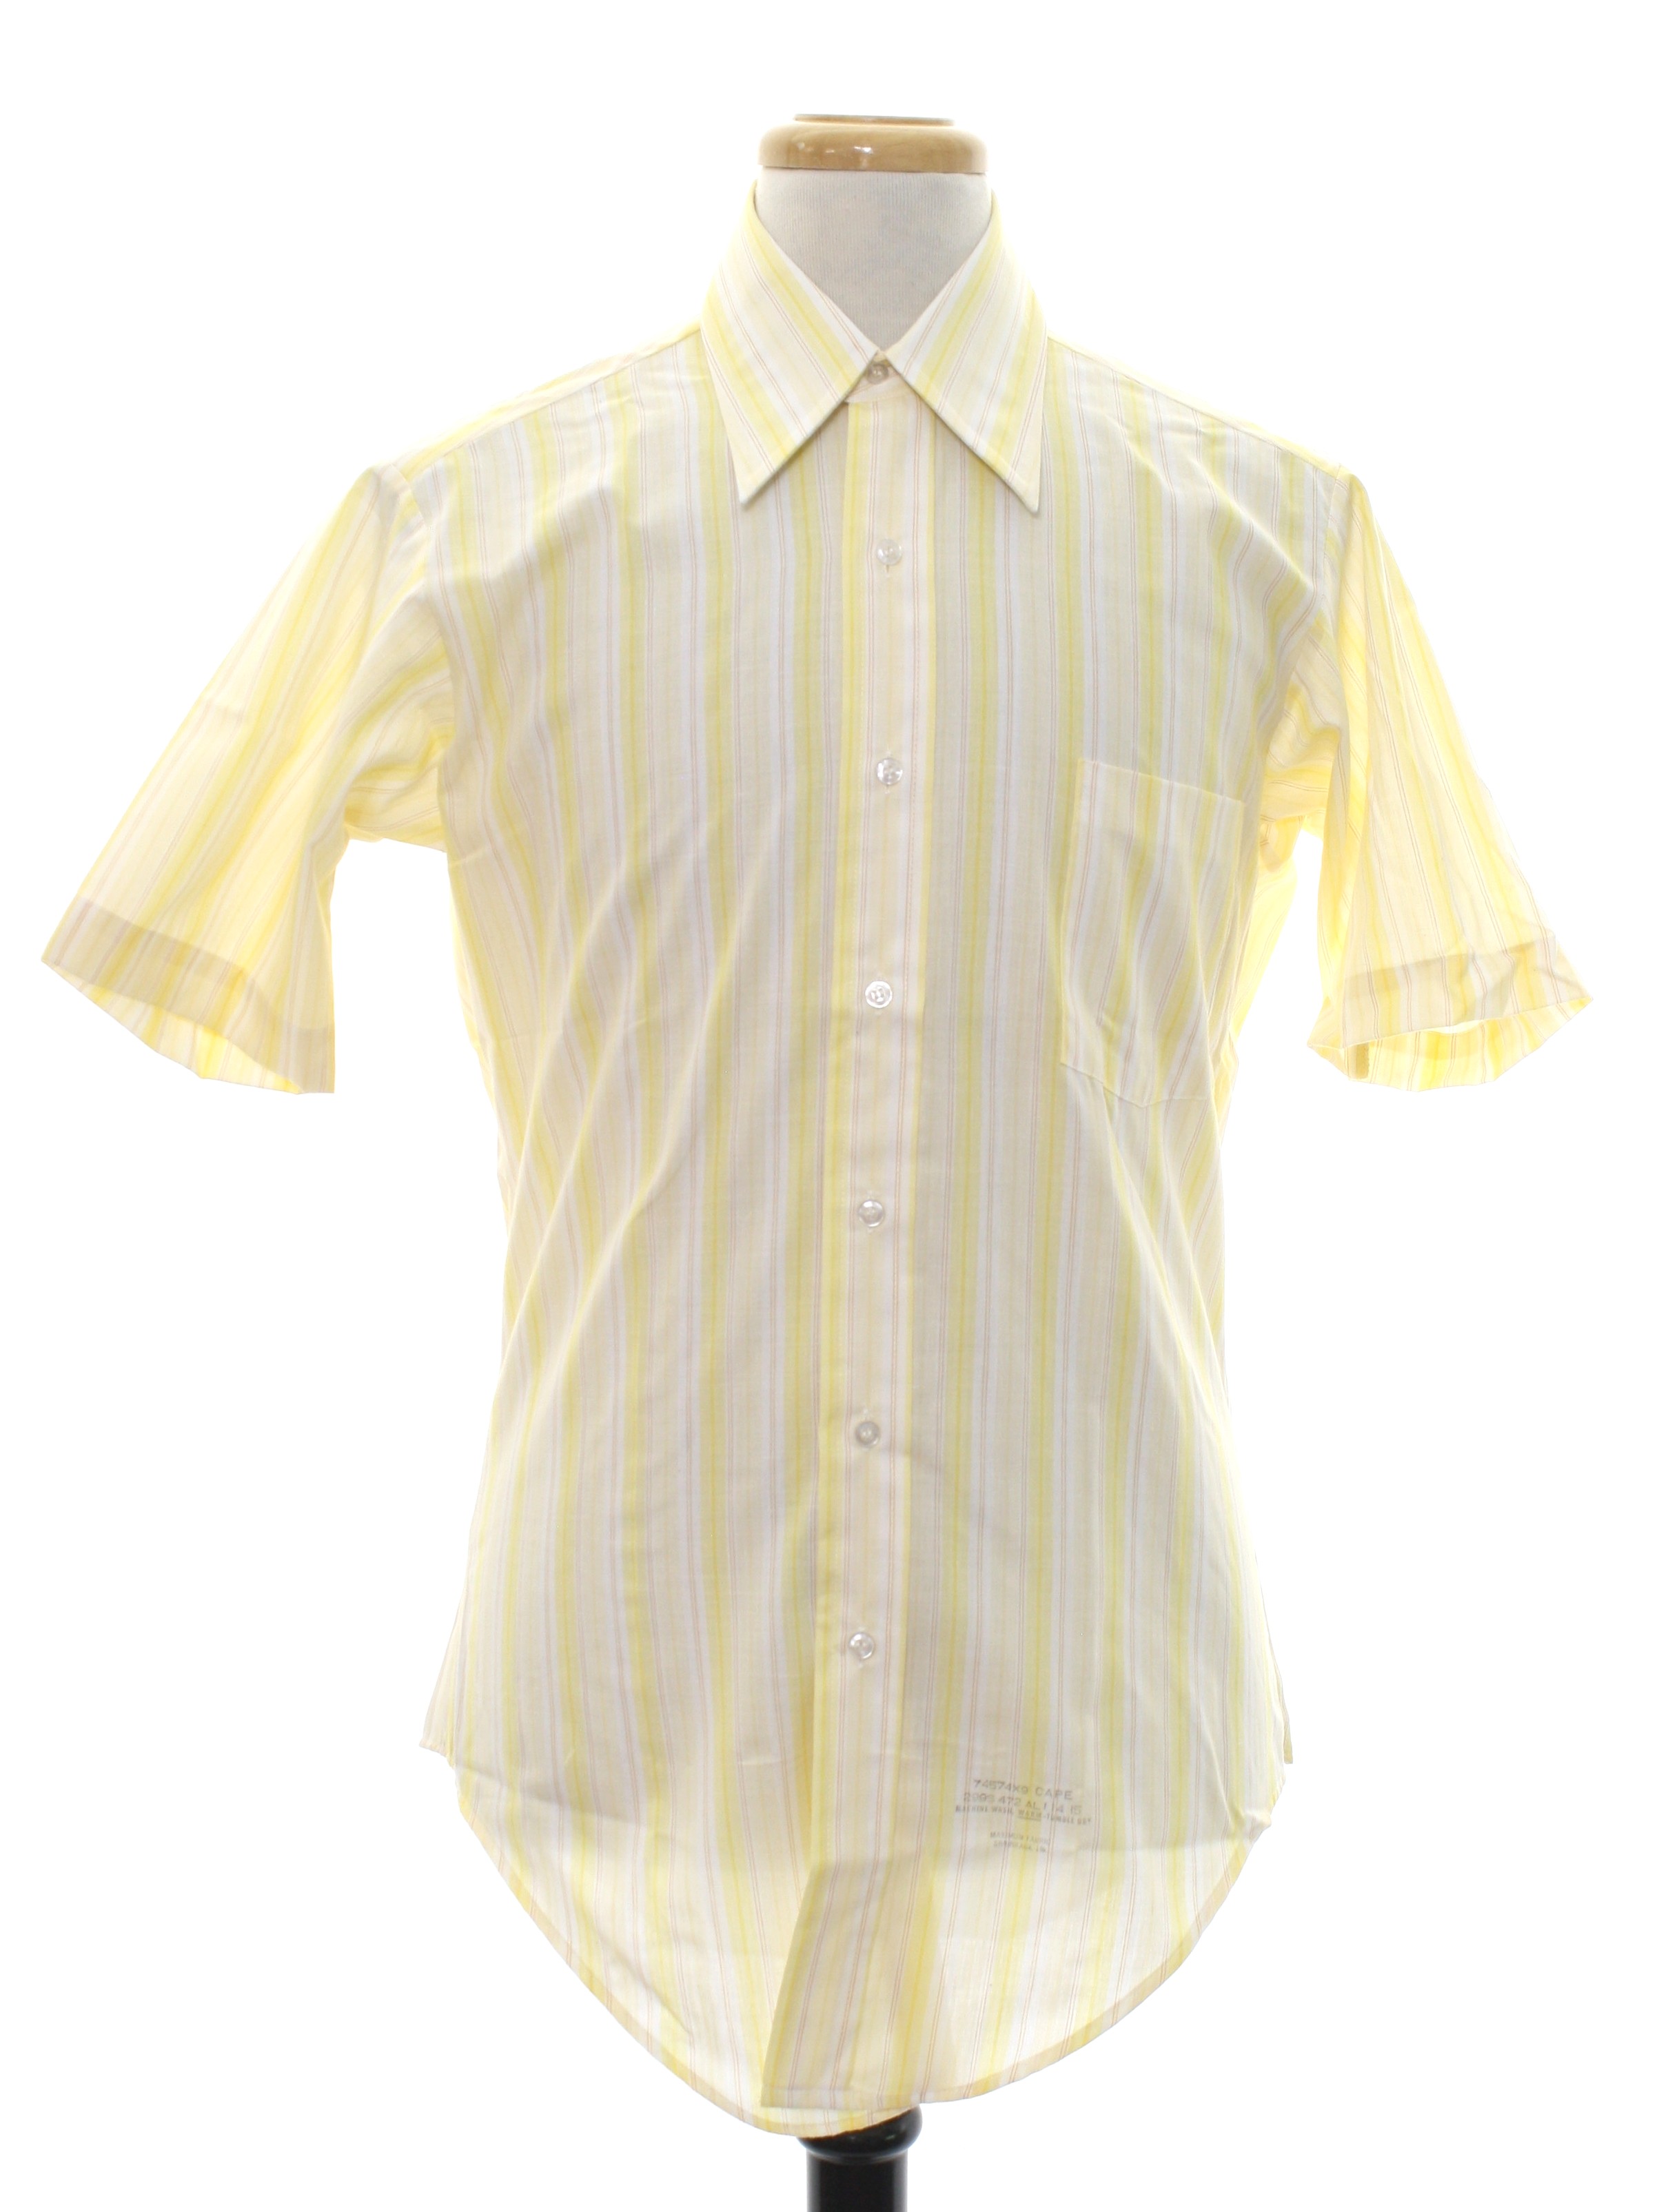 Retro 1960's Shirt (Sears Perma Prest) : Late 60s -Sears Perma Prest ...